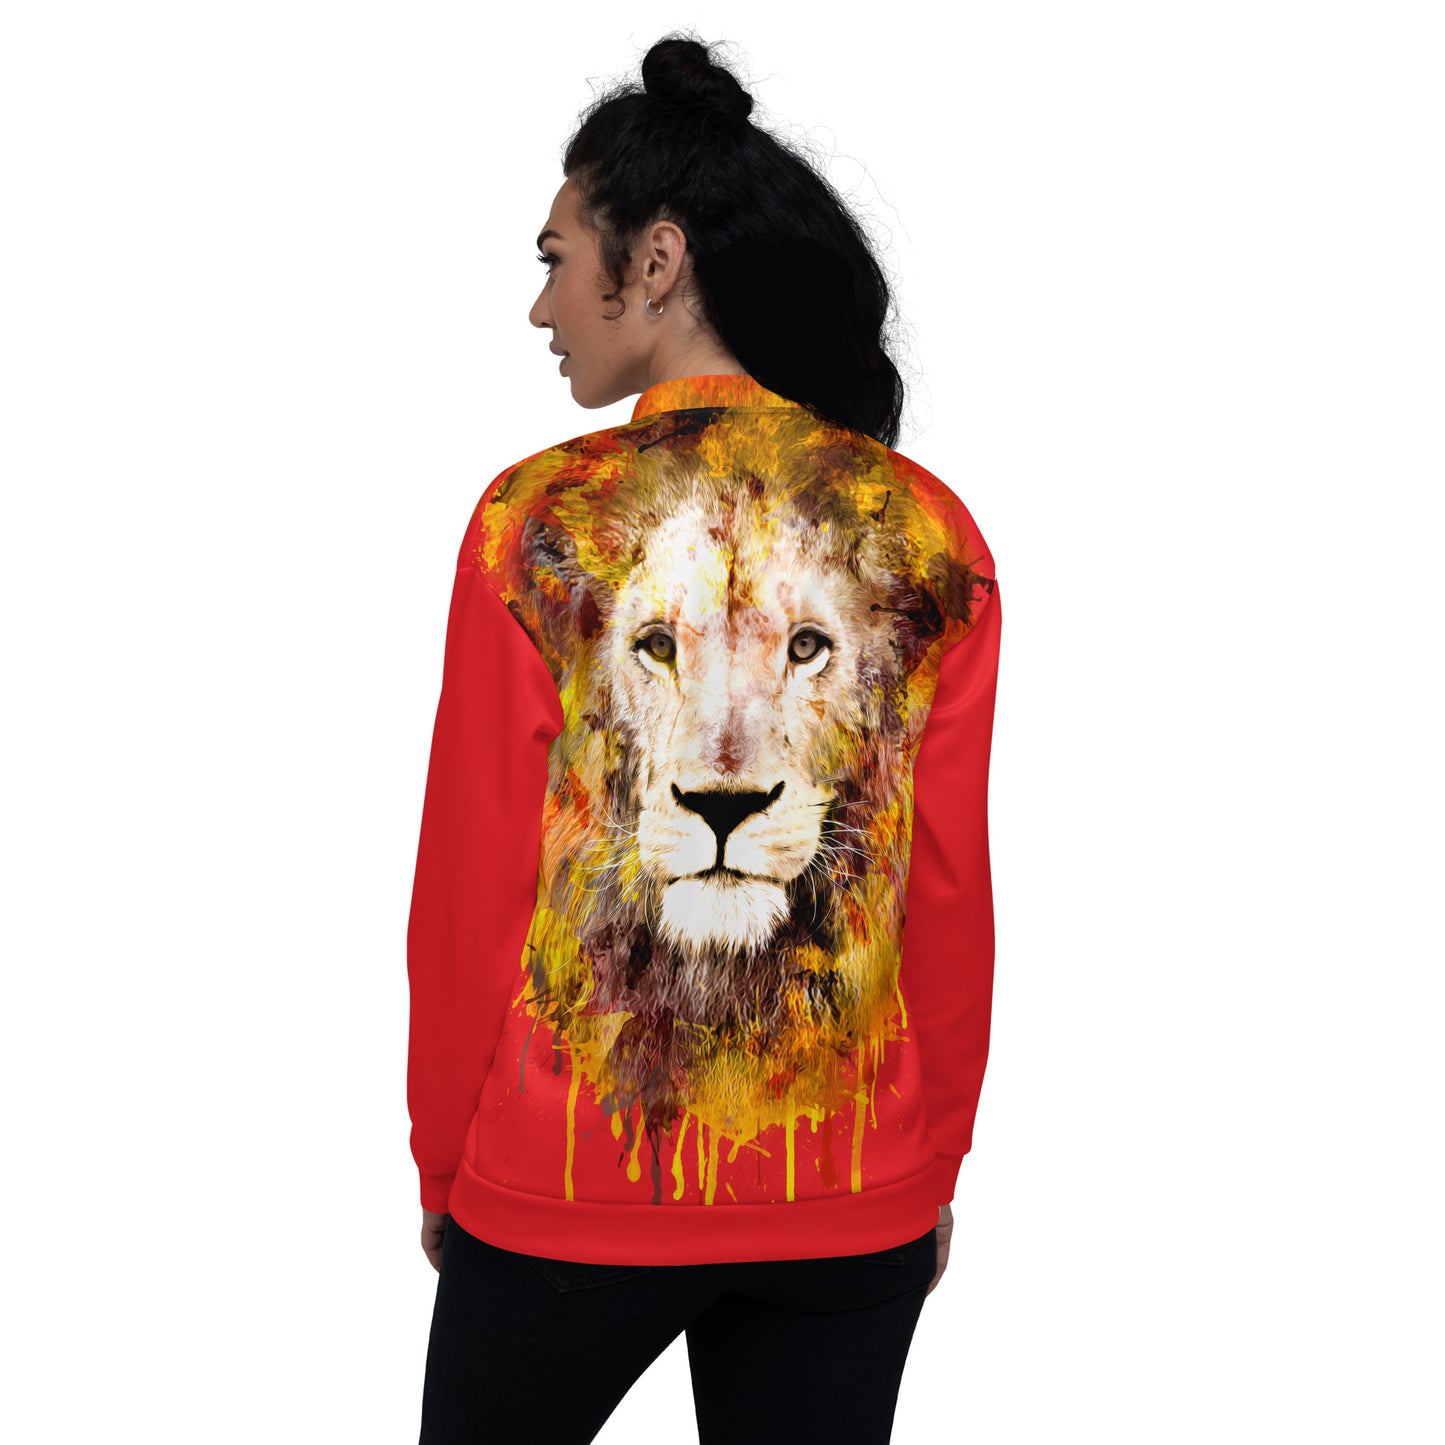 Red Bomber Jacket - OG Hippie Chick (large Lion on back)